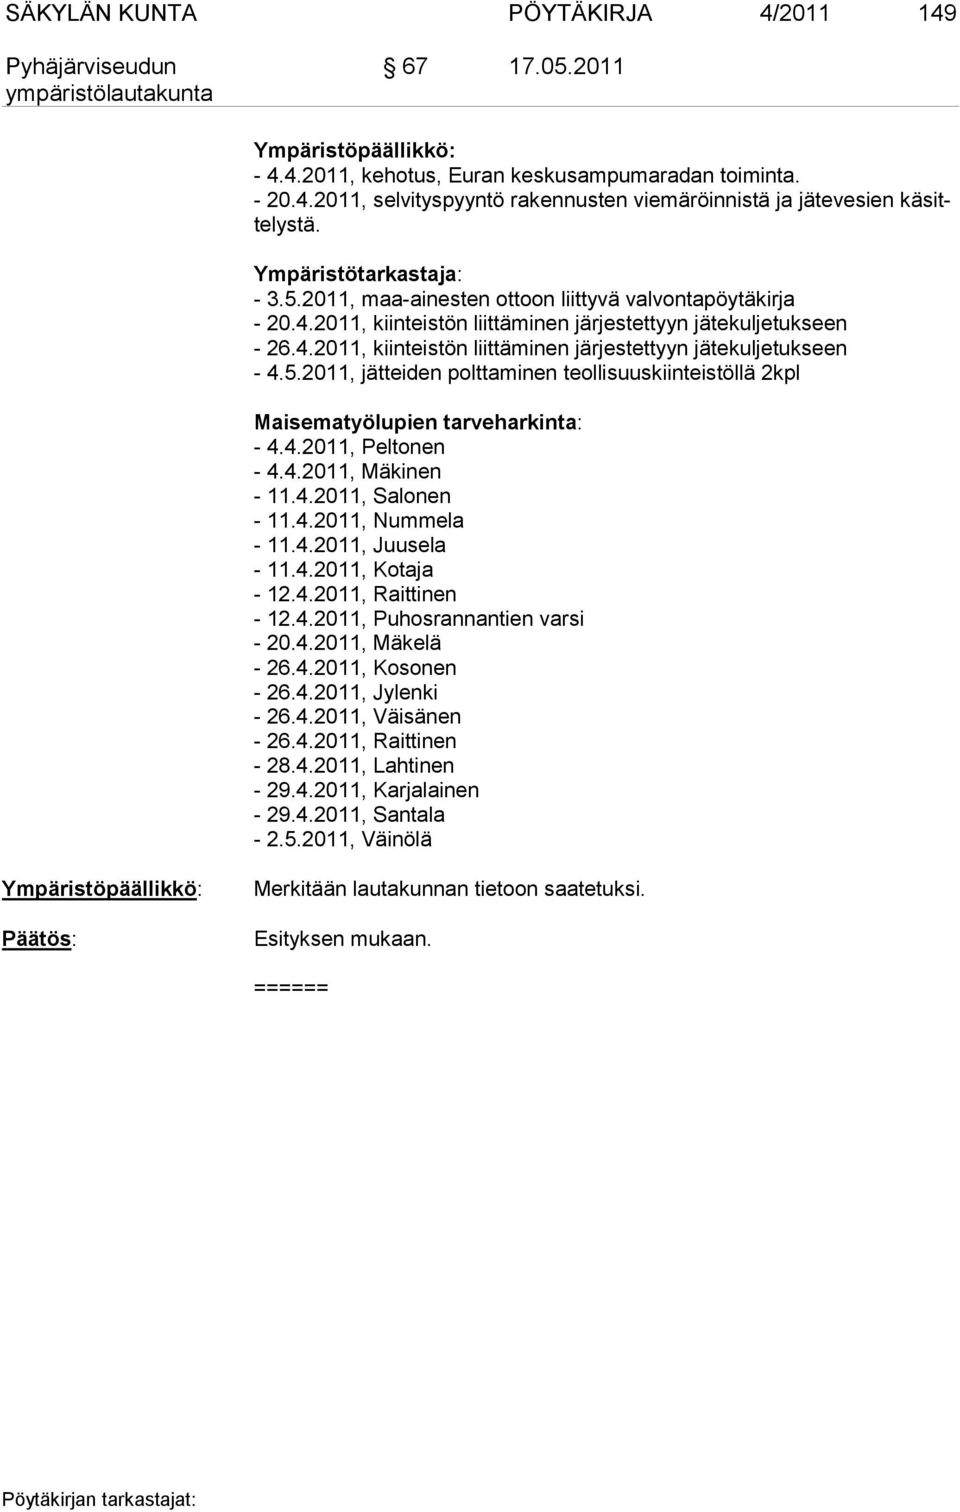 5.2011, jätteiden polttaminen teollisuuskiinteistöllä 2kpl Maisematyölupien tarveharkinta: - 4.4.2011, Peltonen - 4.4.2011, Mäkinen - 11.4.2011, Salonen - 11.4.2011, Nummela - 11.4.2011, Juusela - 11.